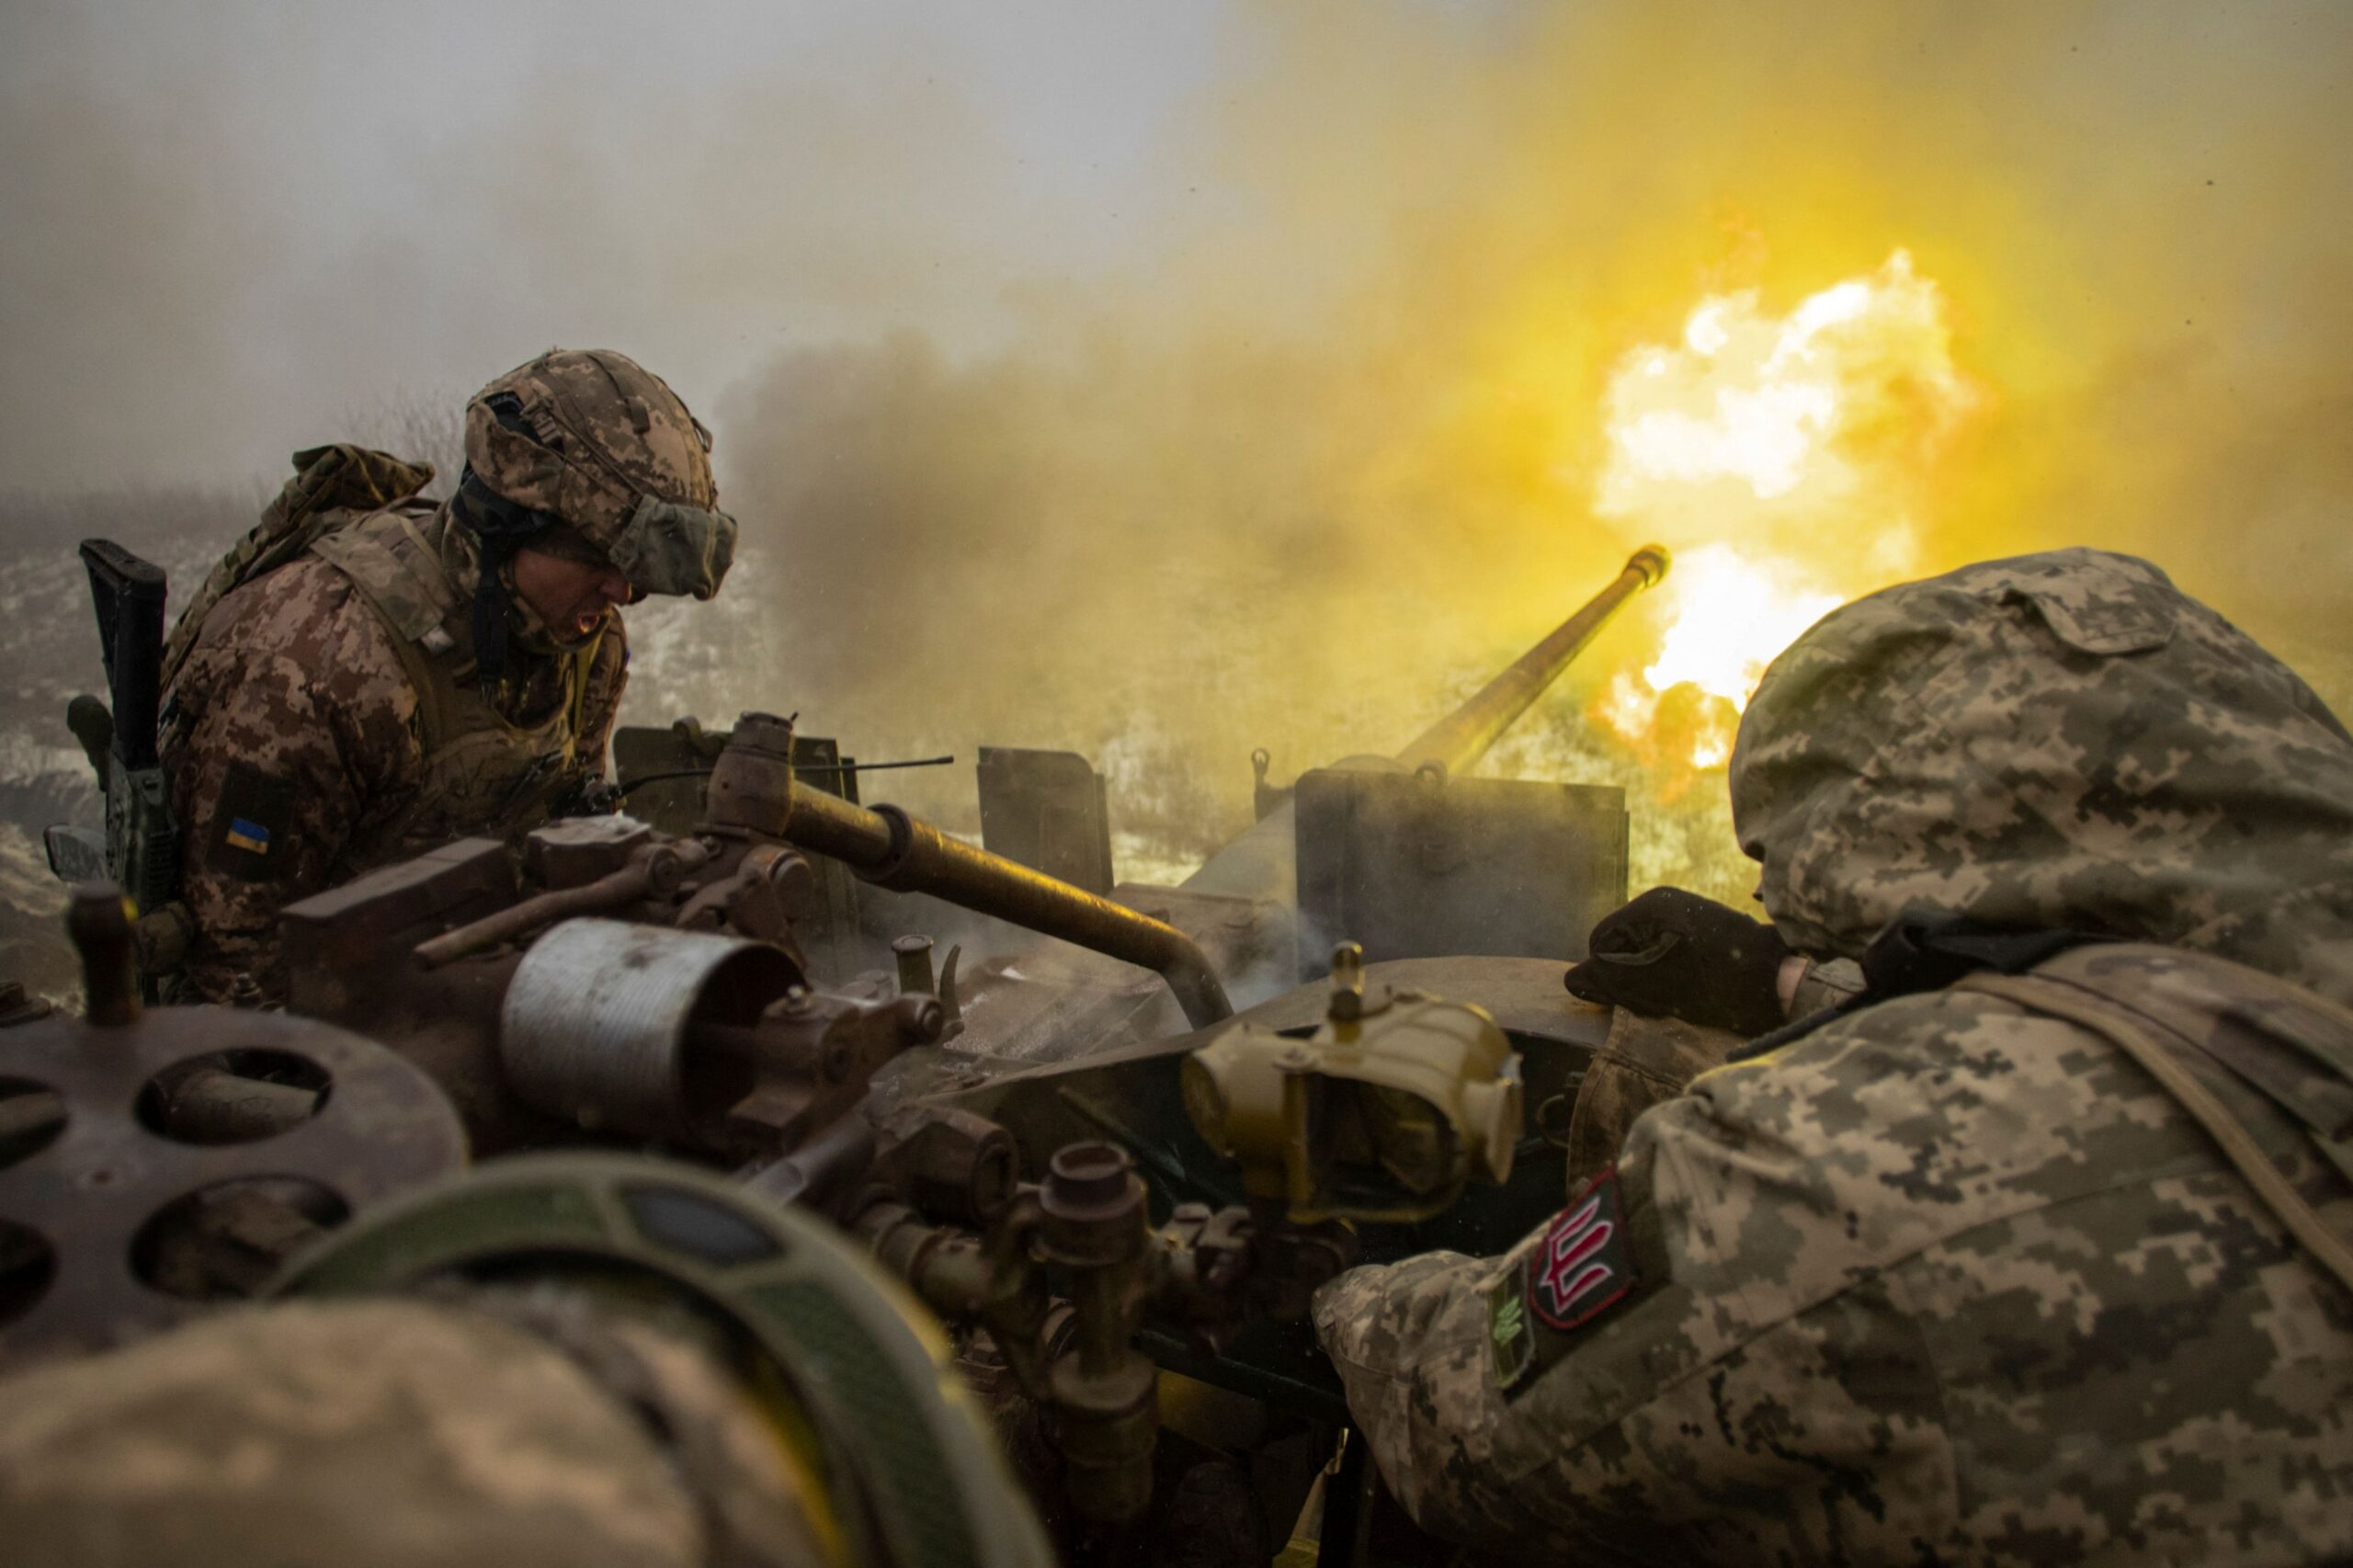 Οι ΗΠΑ στέλνουν νέο πακέτο στρατιωτικής βοήθειας στην Ουκρανία – Τι περιλαμβάνει